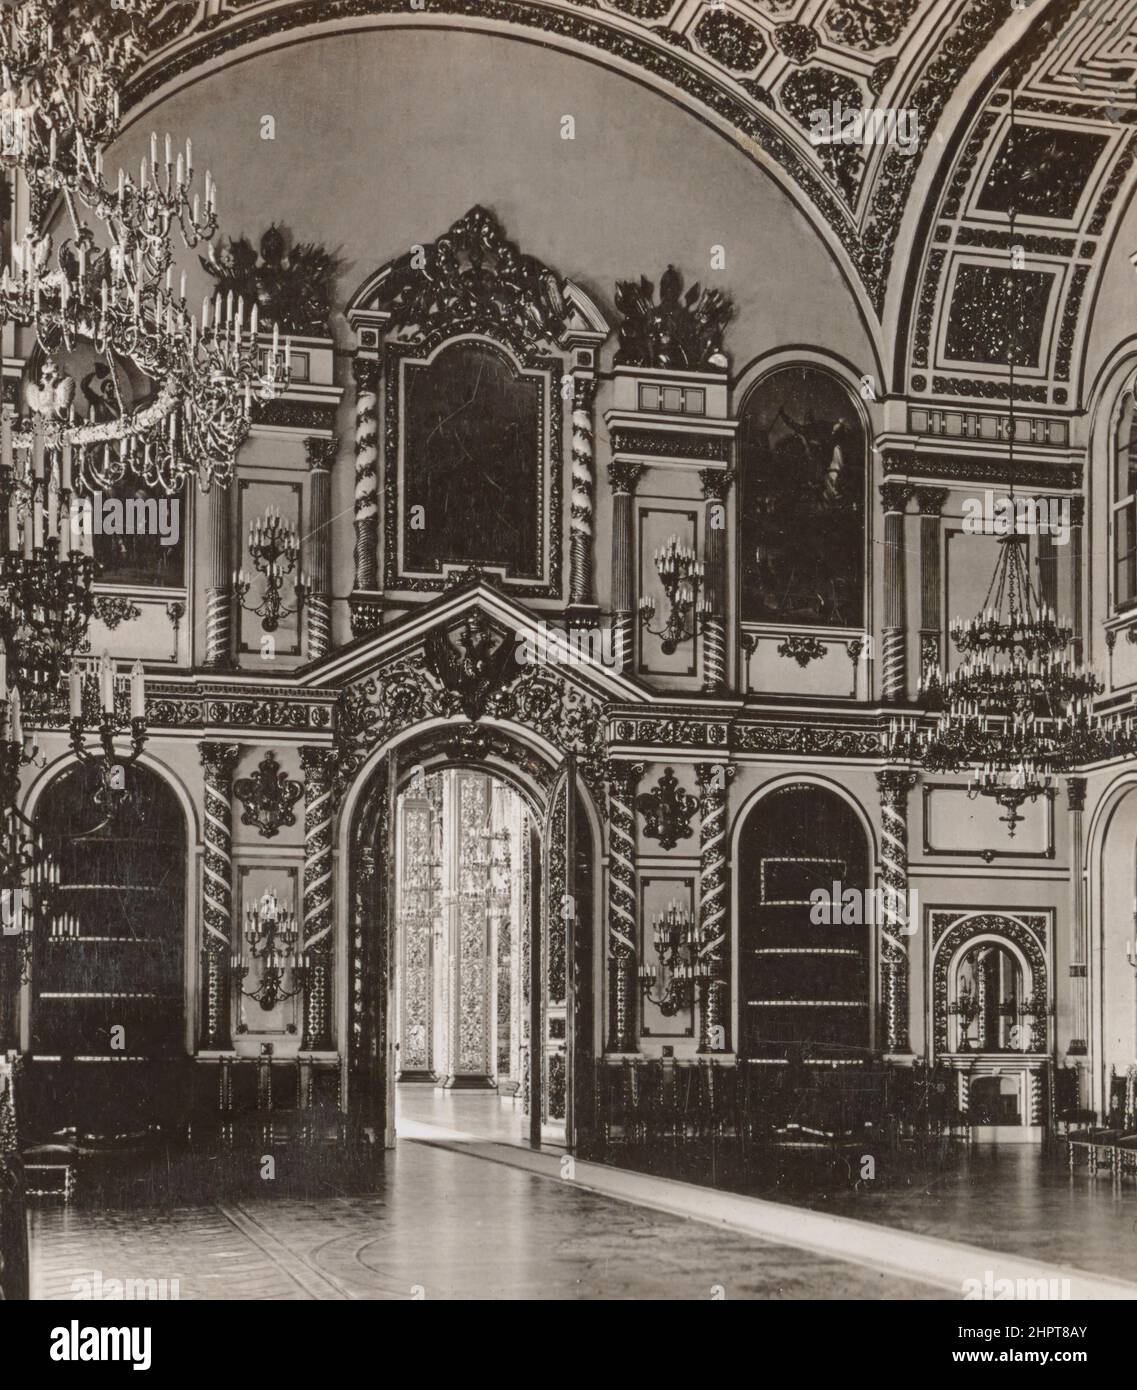 Vintage-Foto von Alexanders Salon (die Halle des Ordens des Hl. Alexander Newski) im Moskauer Kreml. Russisches Reich. 1900s der Saal des Ordens der S Stockfoto